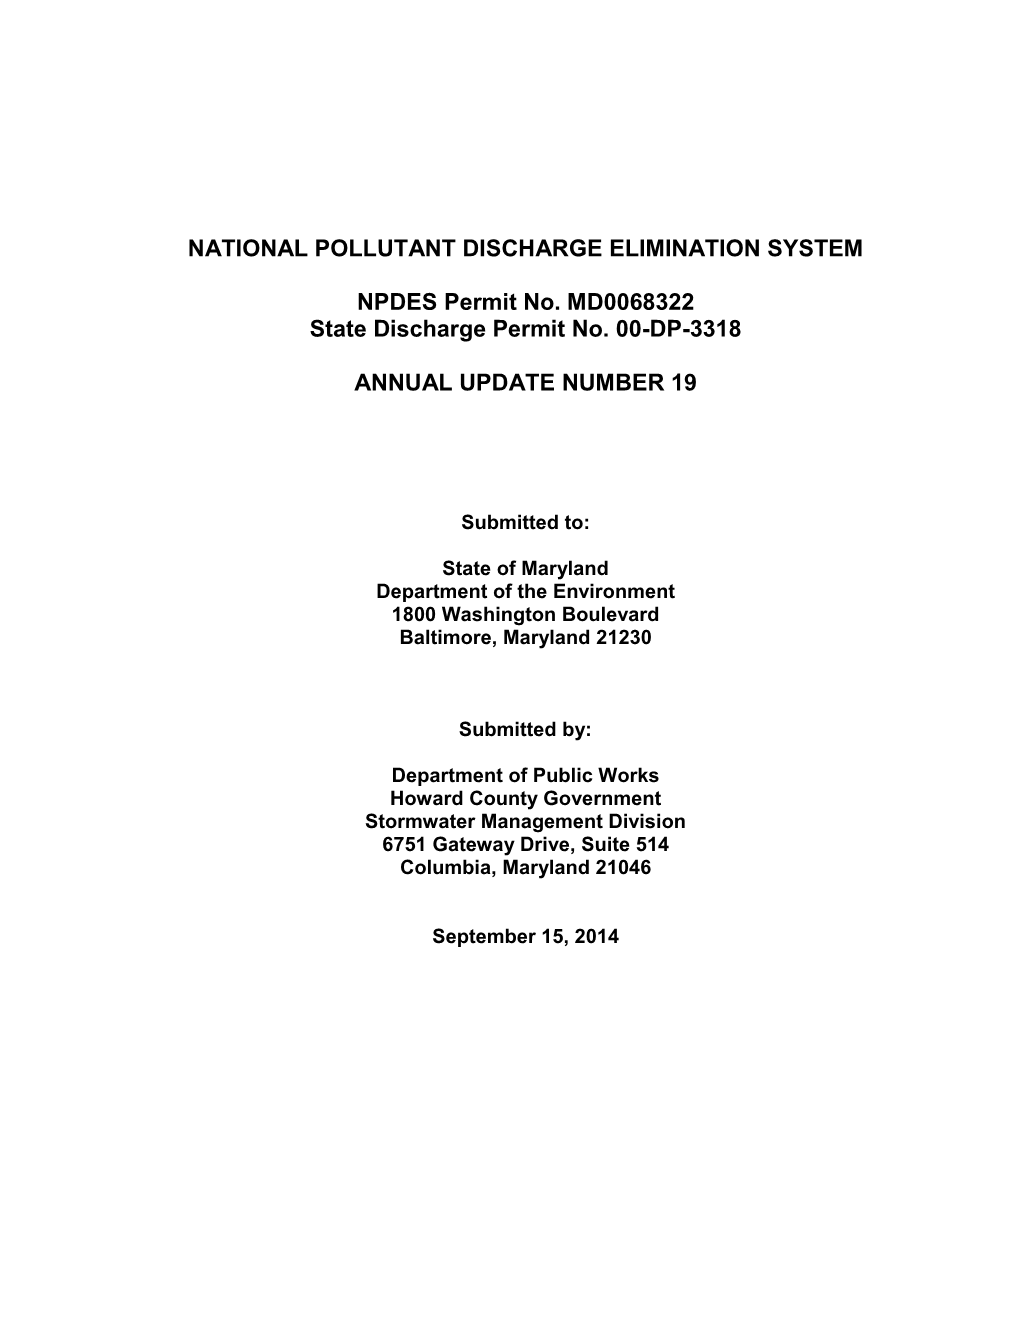 National Pollutant Discharge Elimination System